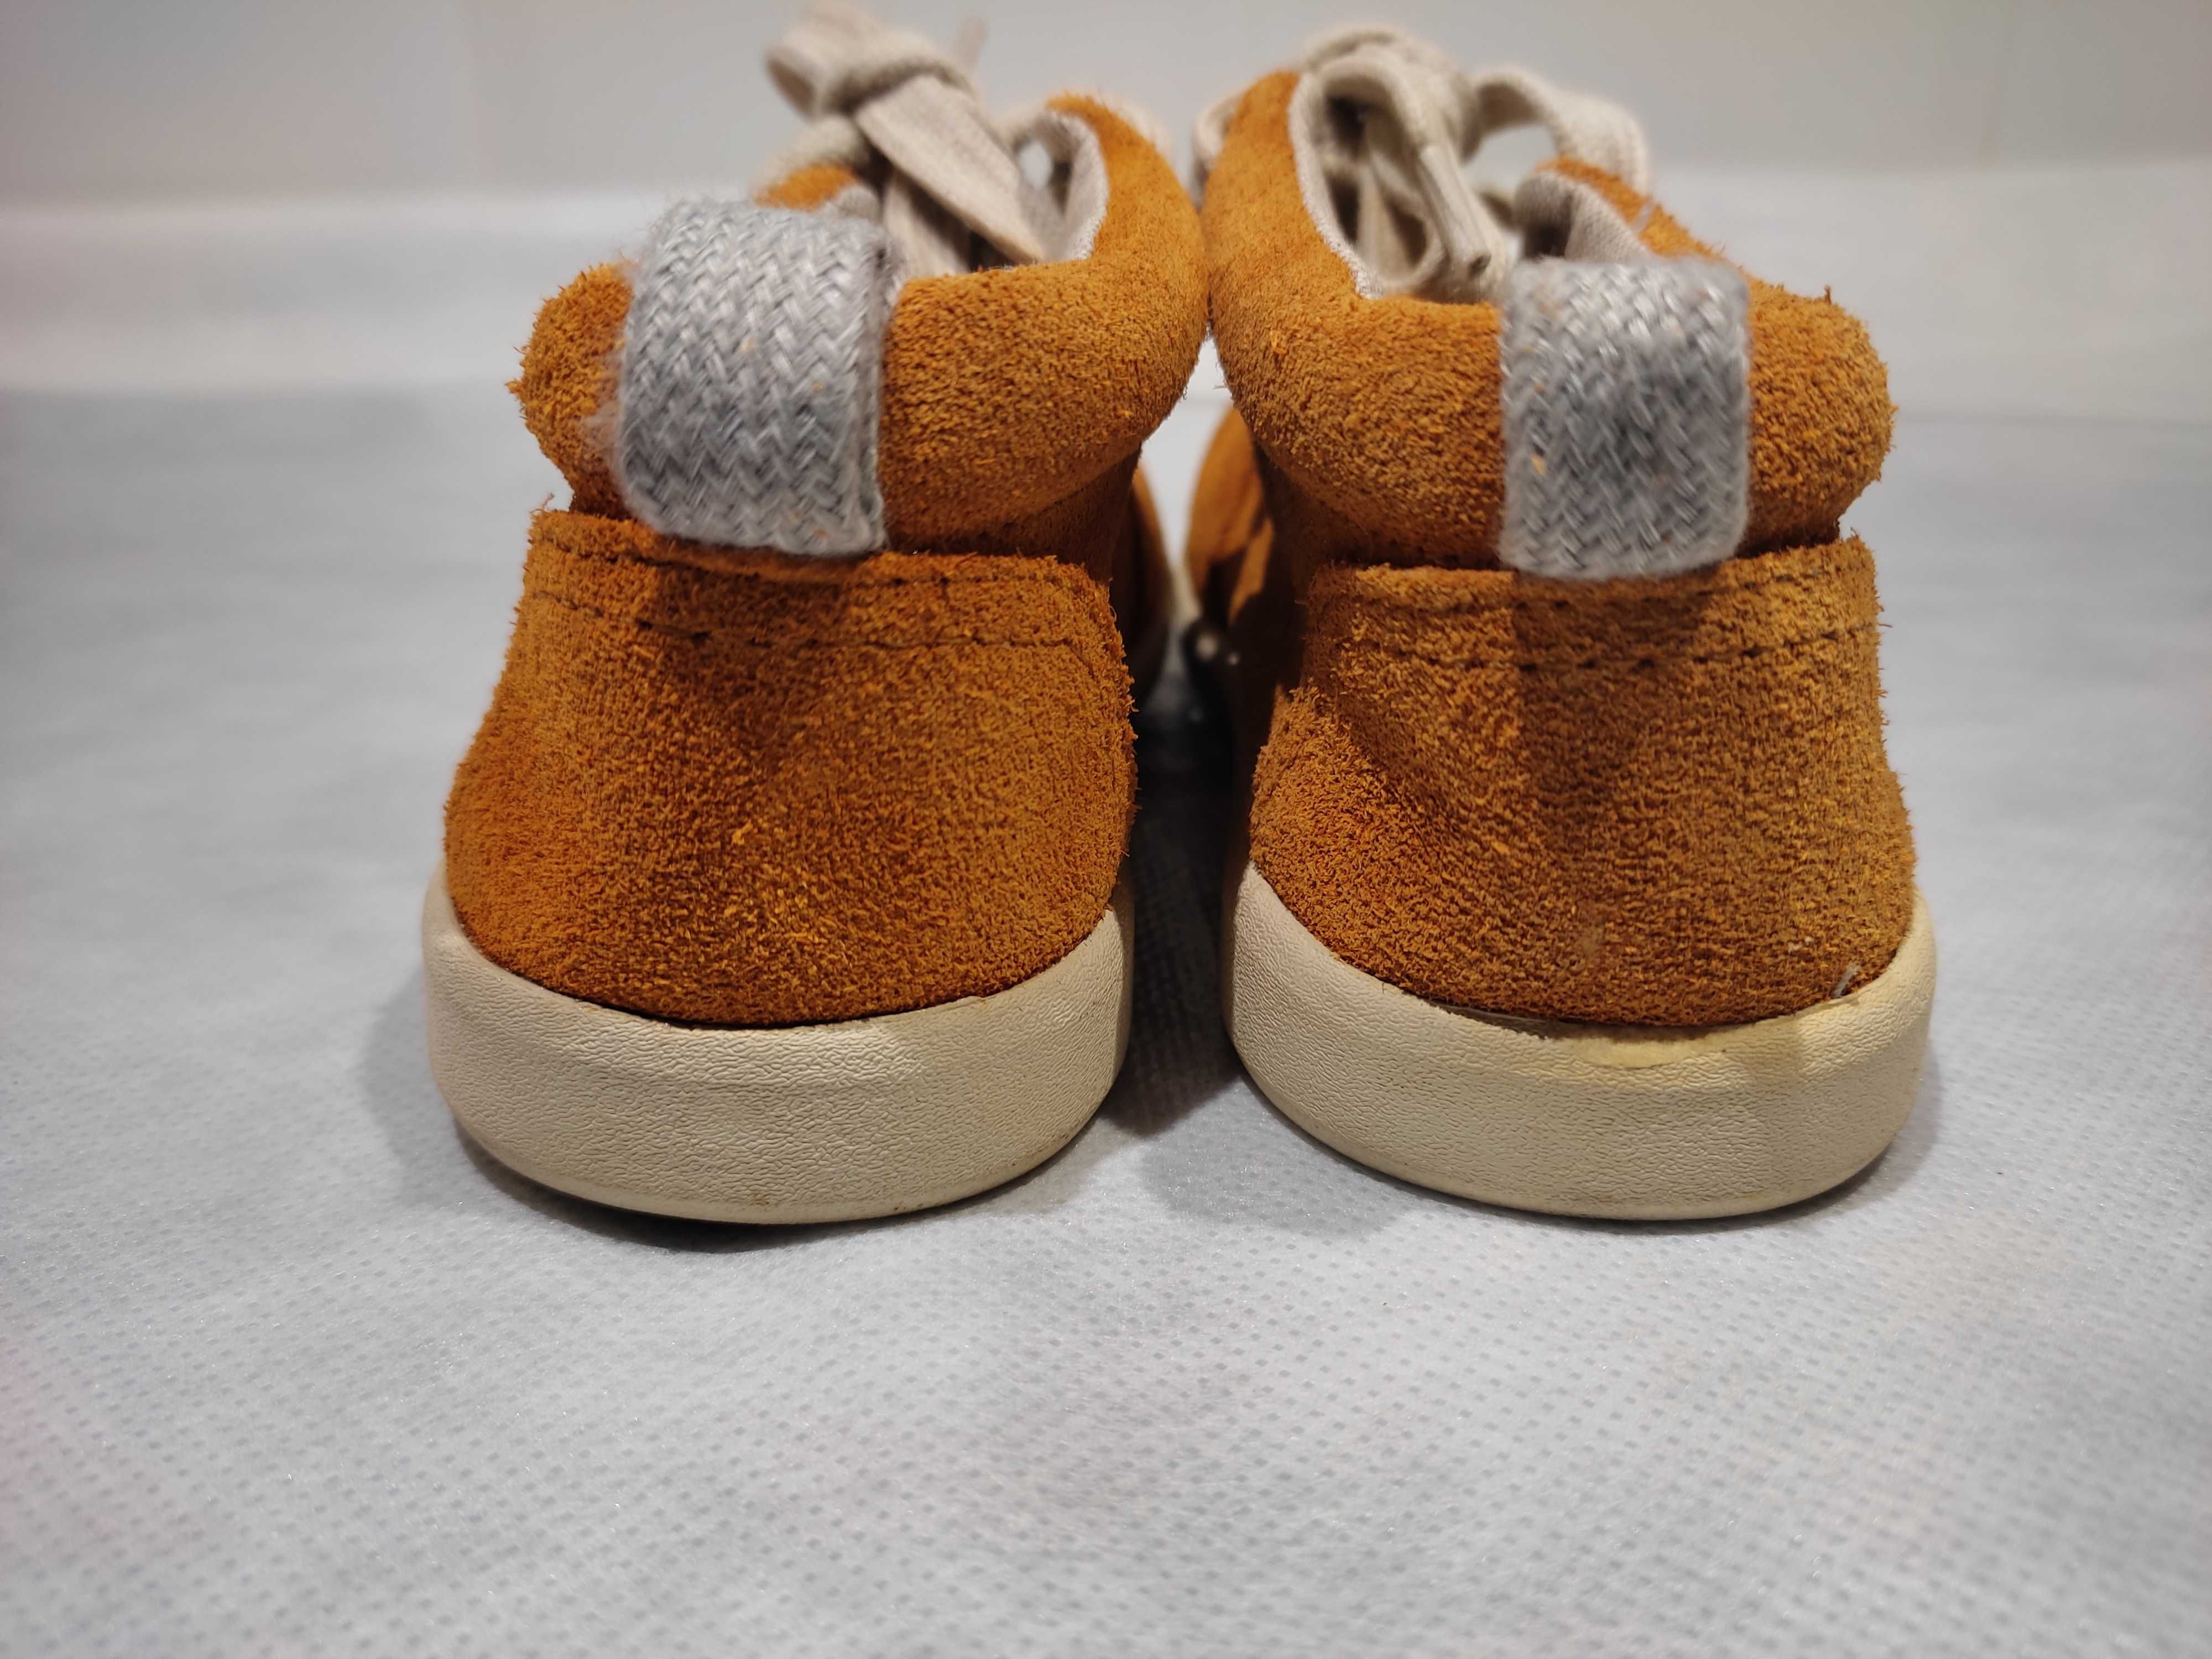 Sapatos Zara Baby T. 23 NOVOS